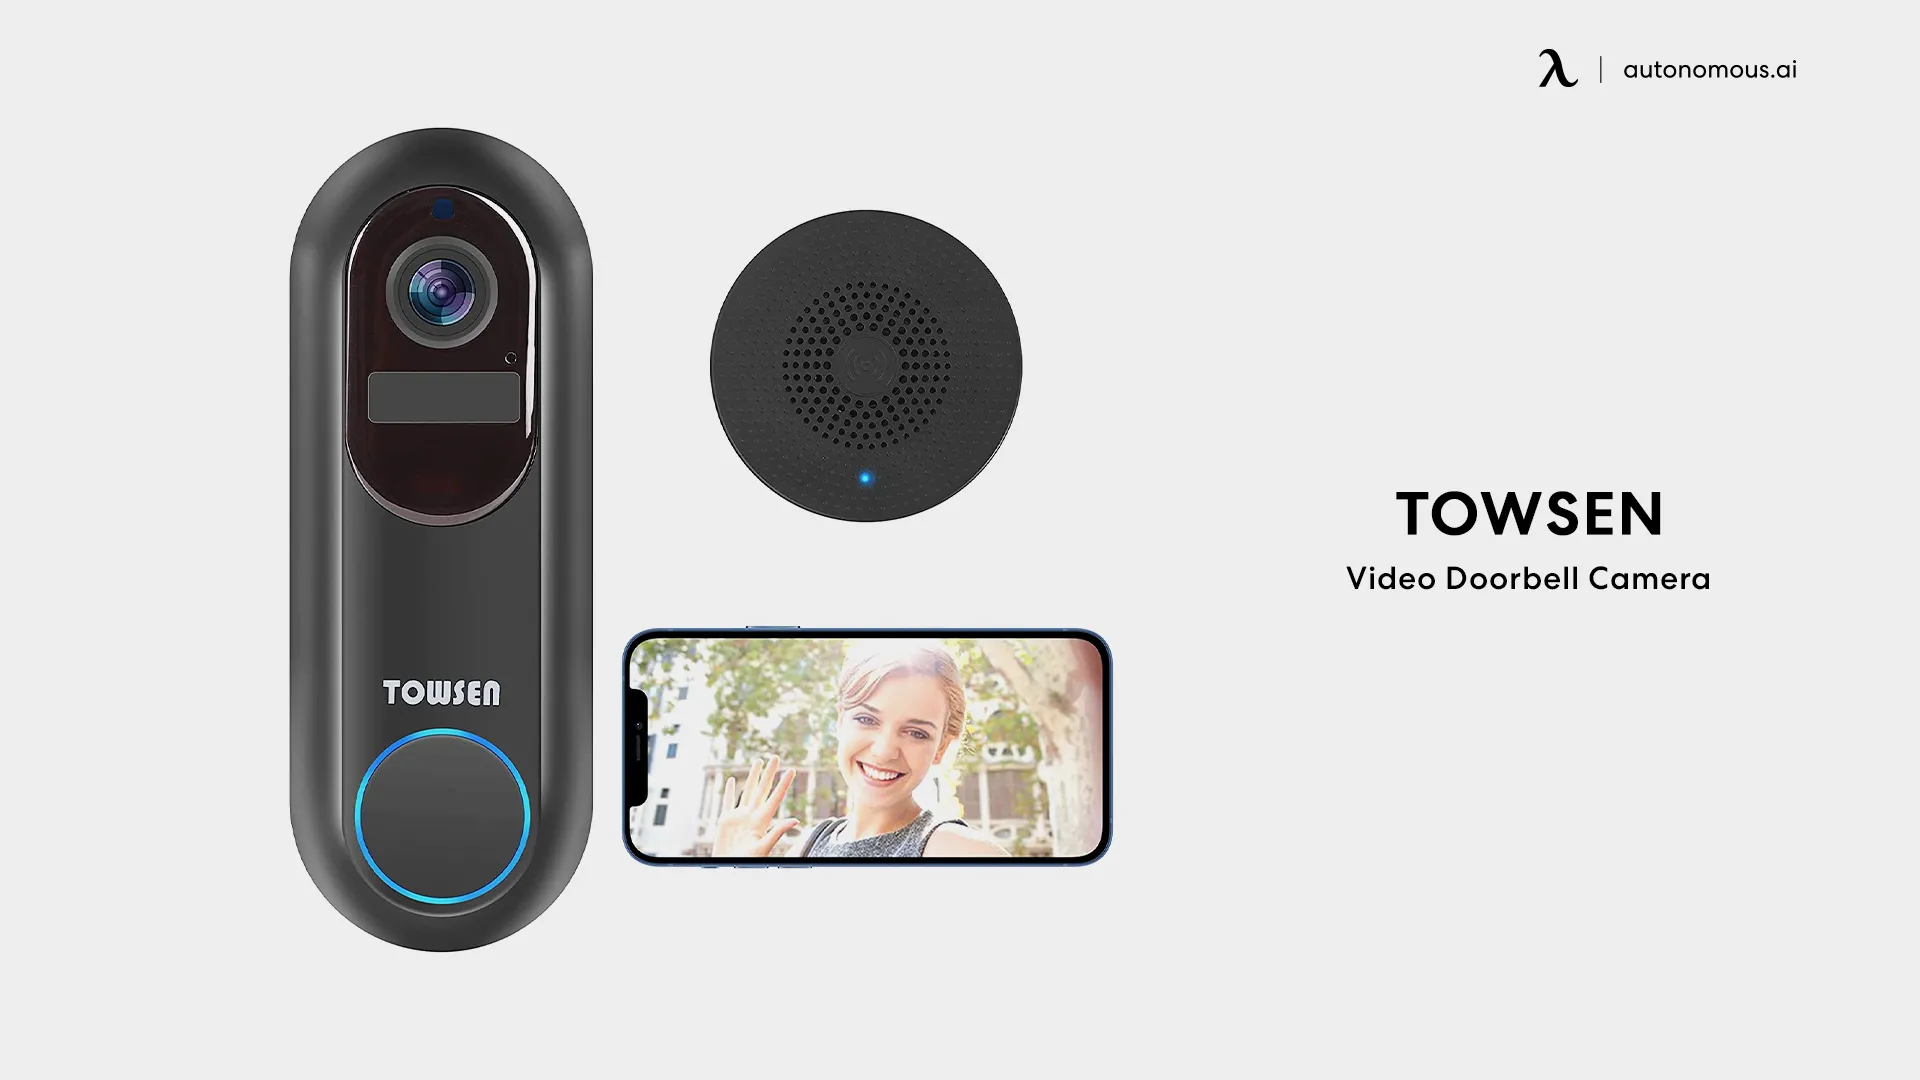 Towsen Video Doorbell Camera